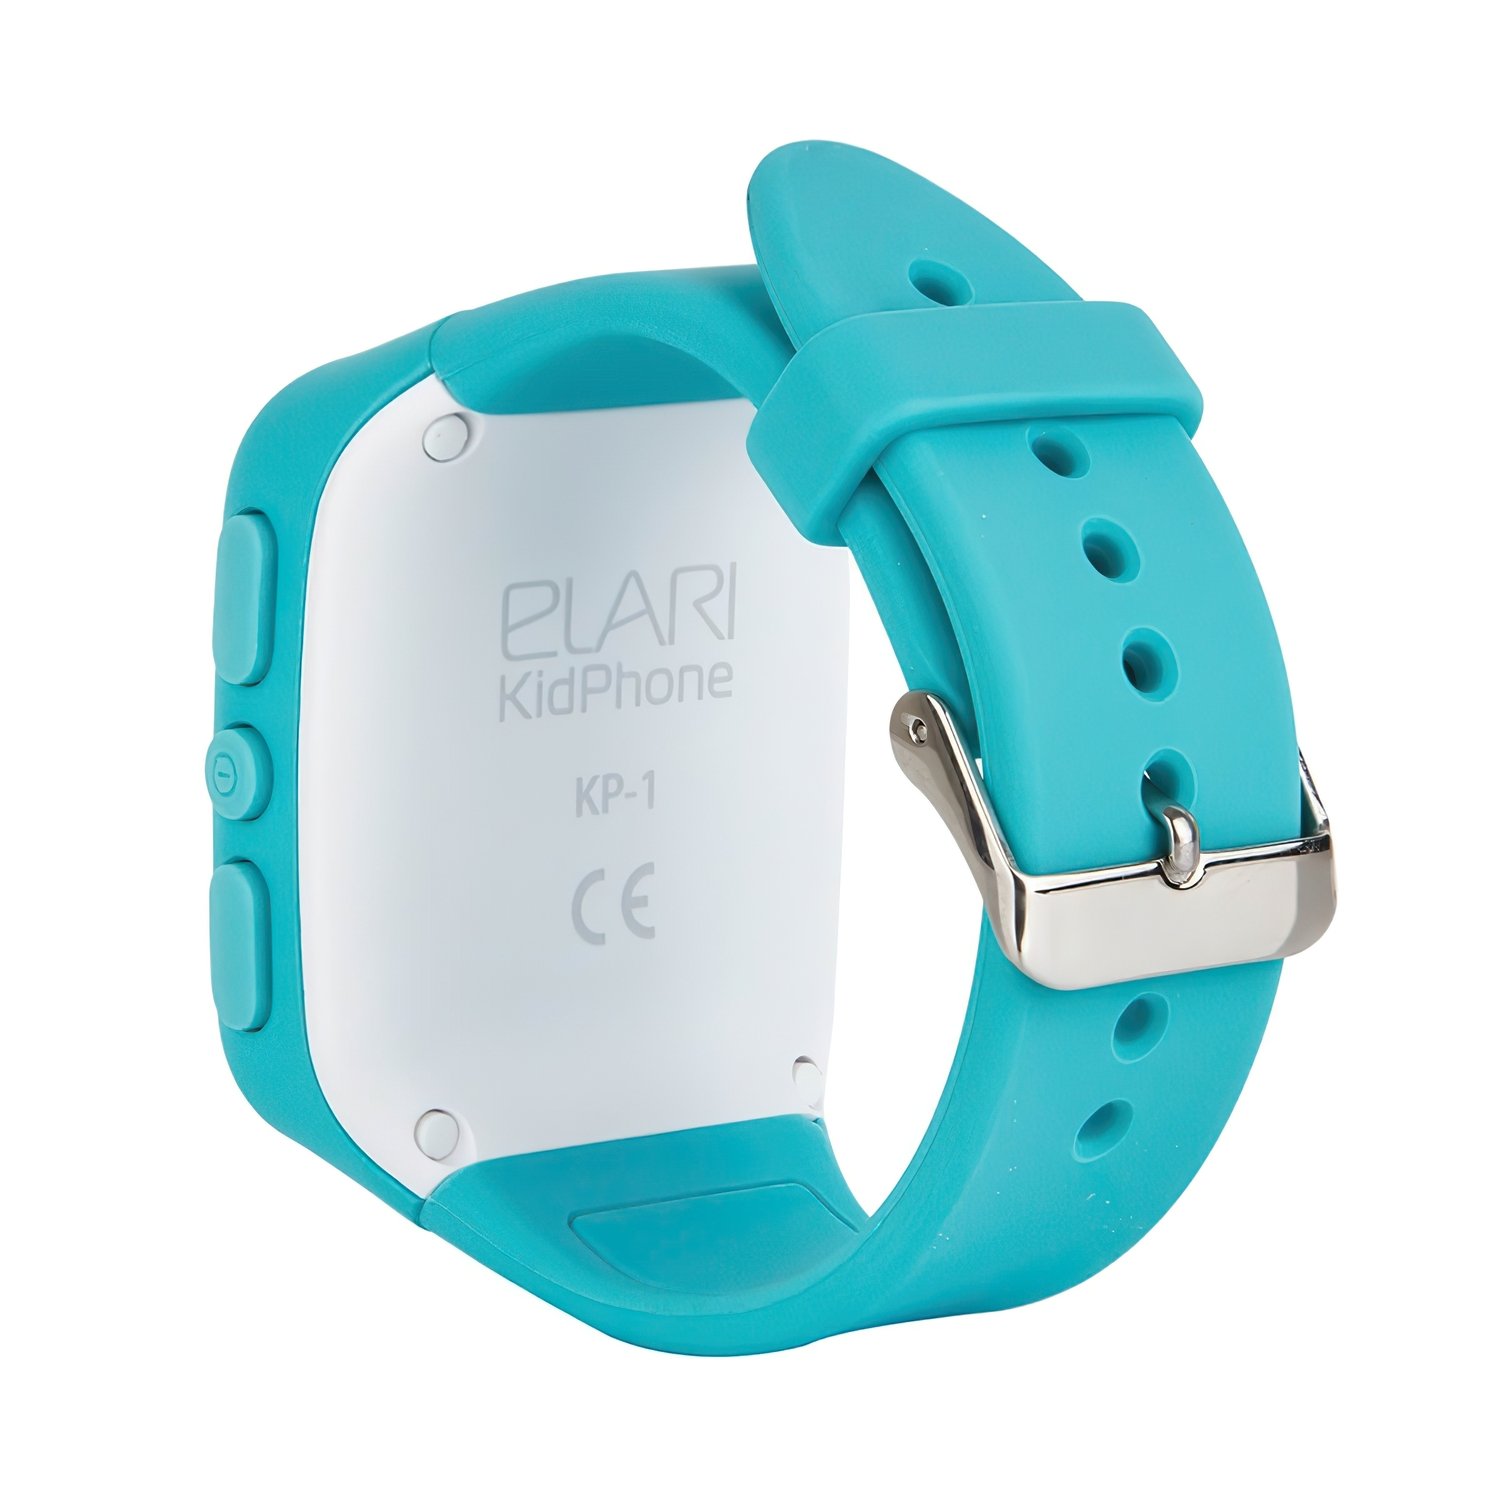 Детские смарт-часы Elari KidPhone Blue с LBS-трекером и цветным .